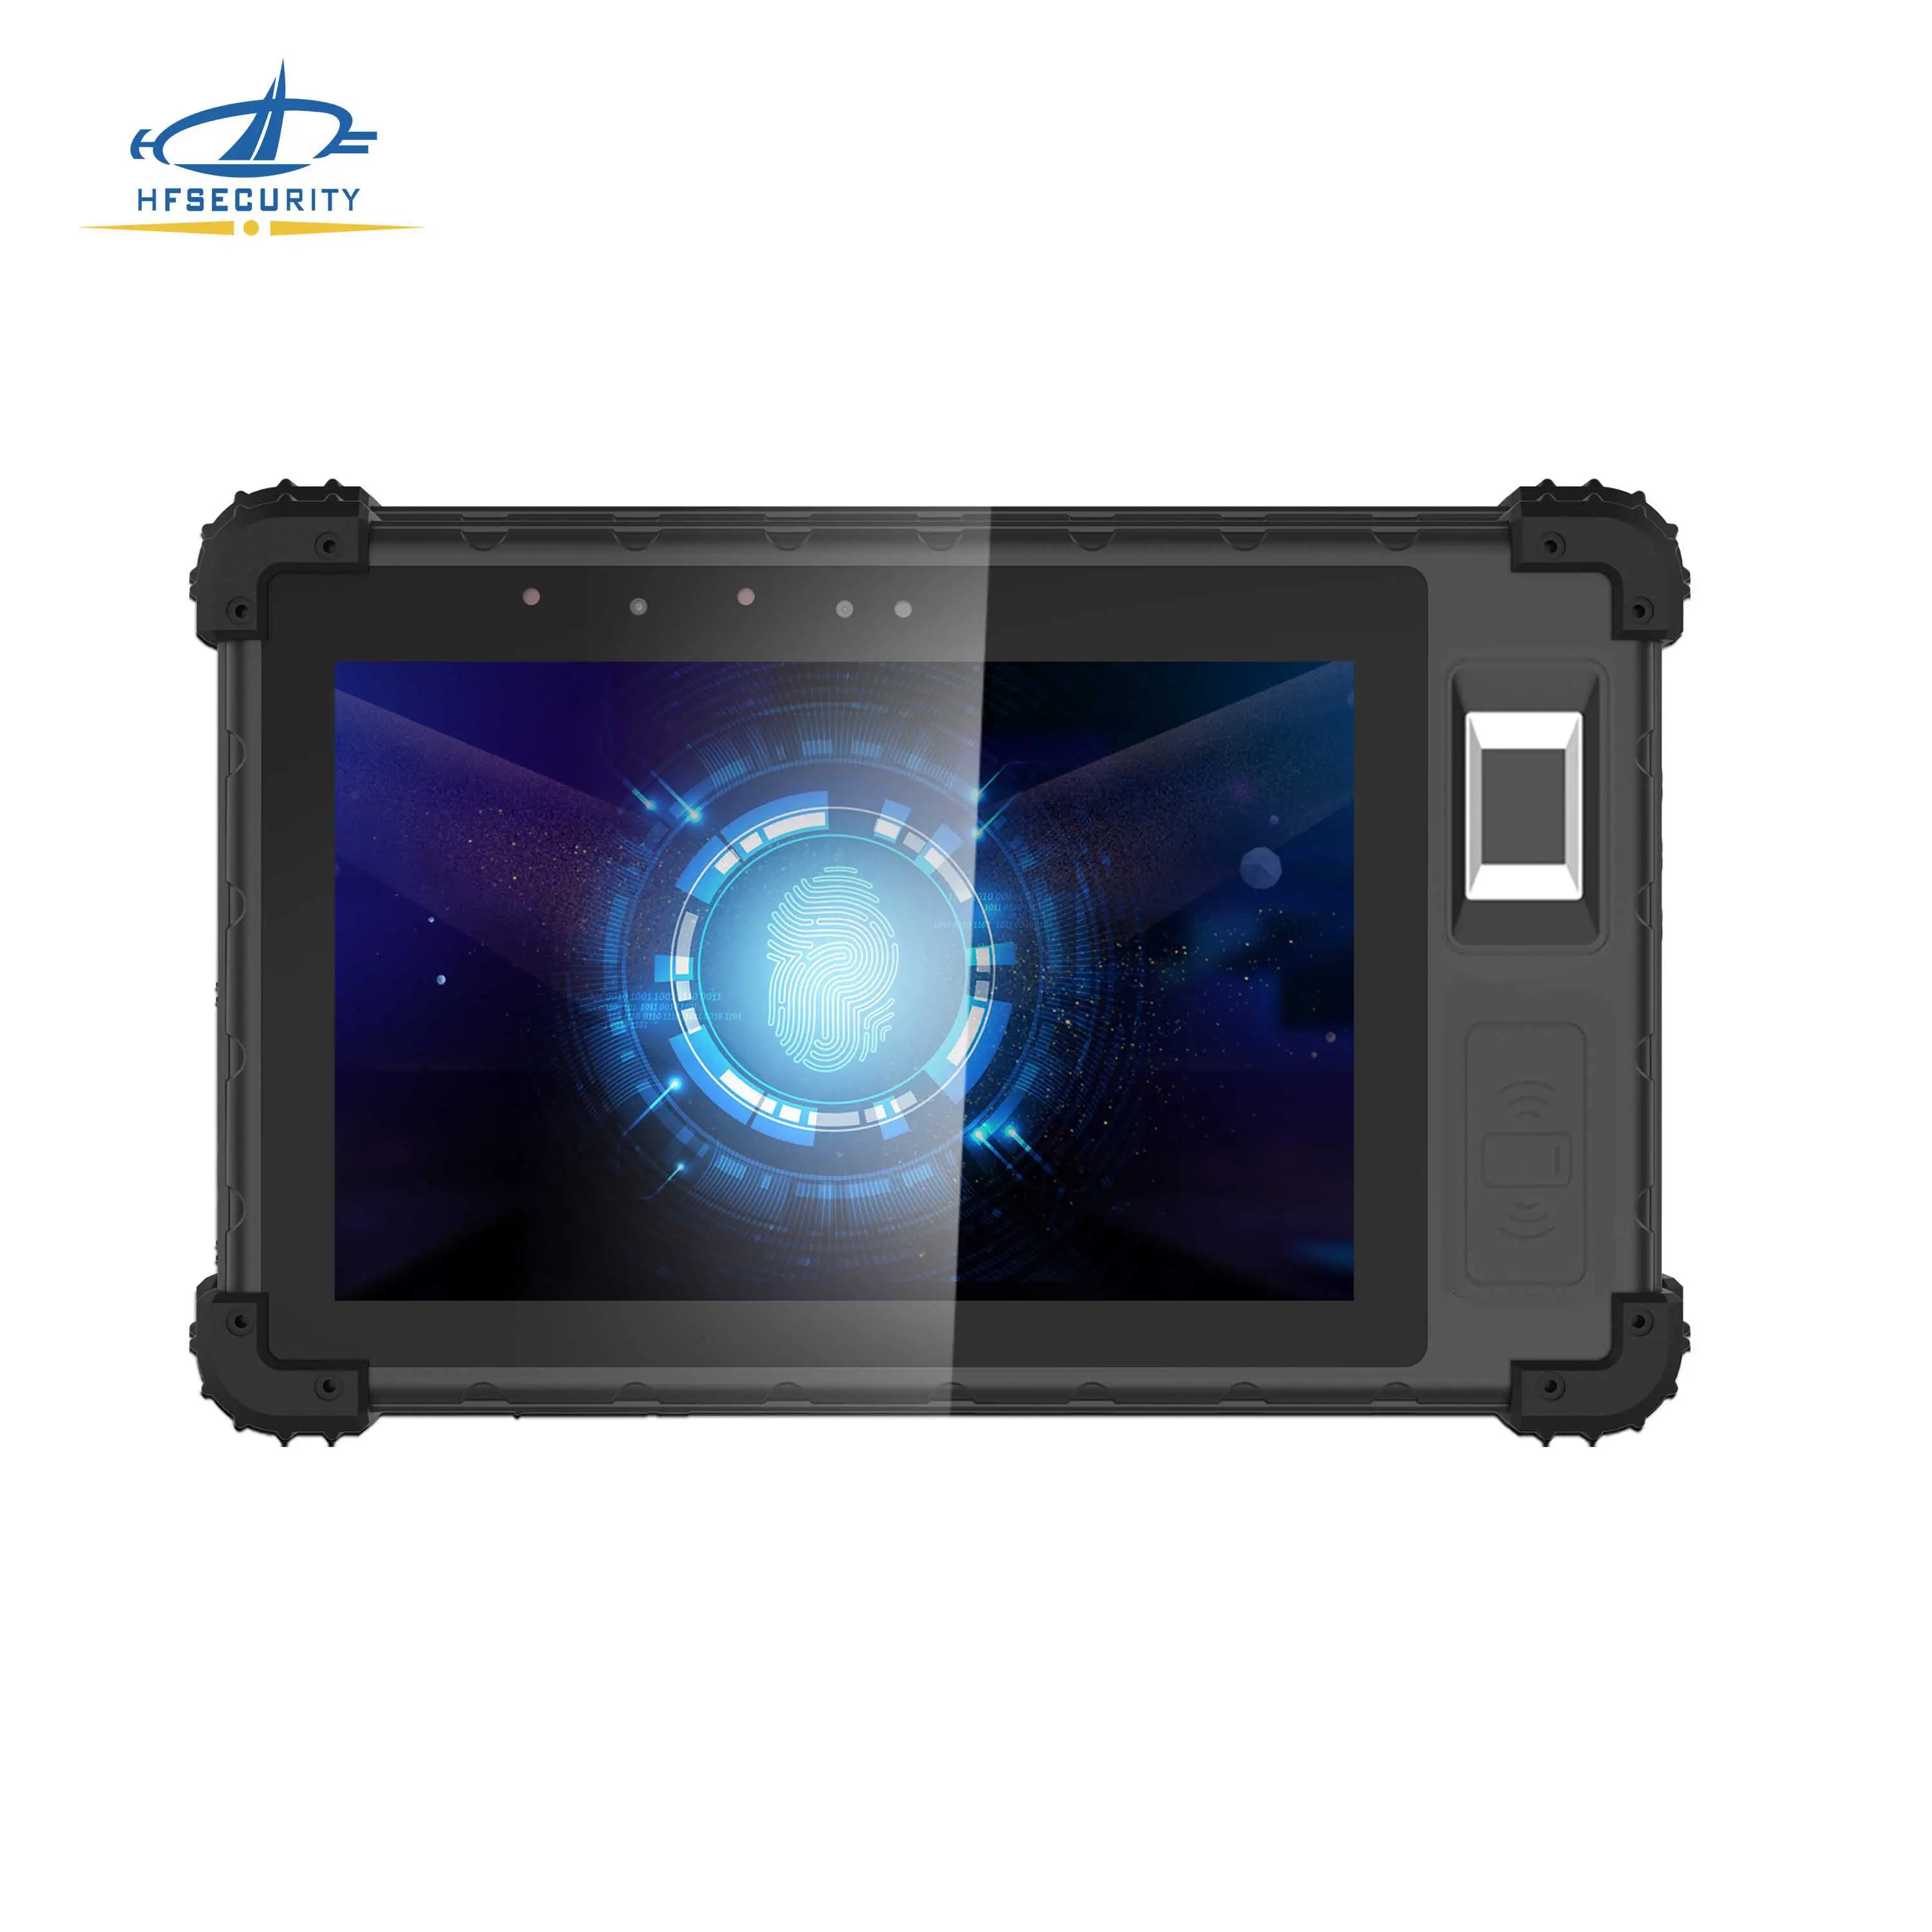 HFSecurity FP08 Escáner de Iris Biométrico Personalizado de Fábrica OCR MRZ Escáner de Código de Barras Industrial Android Rugged Tablet